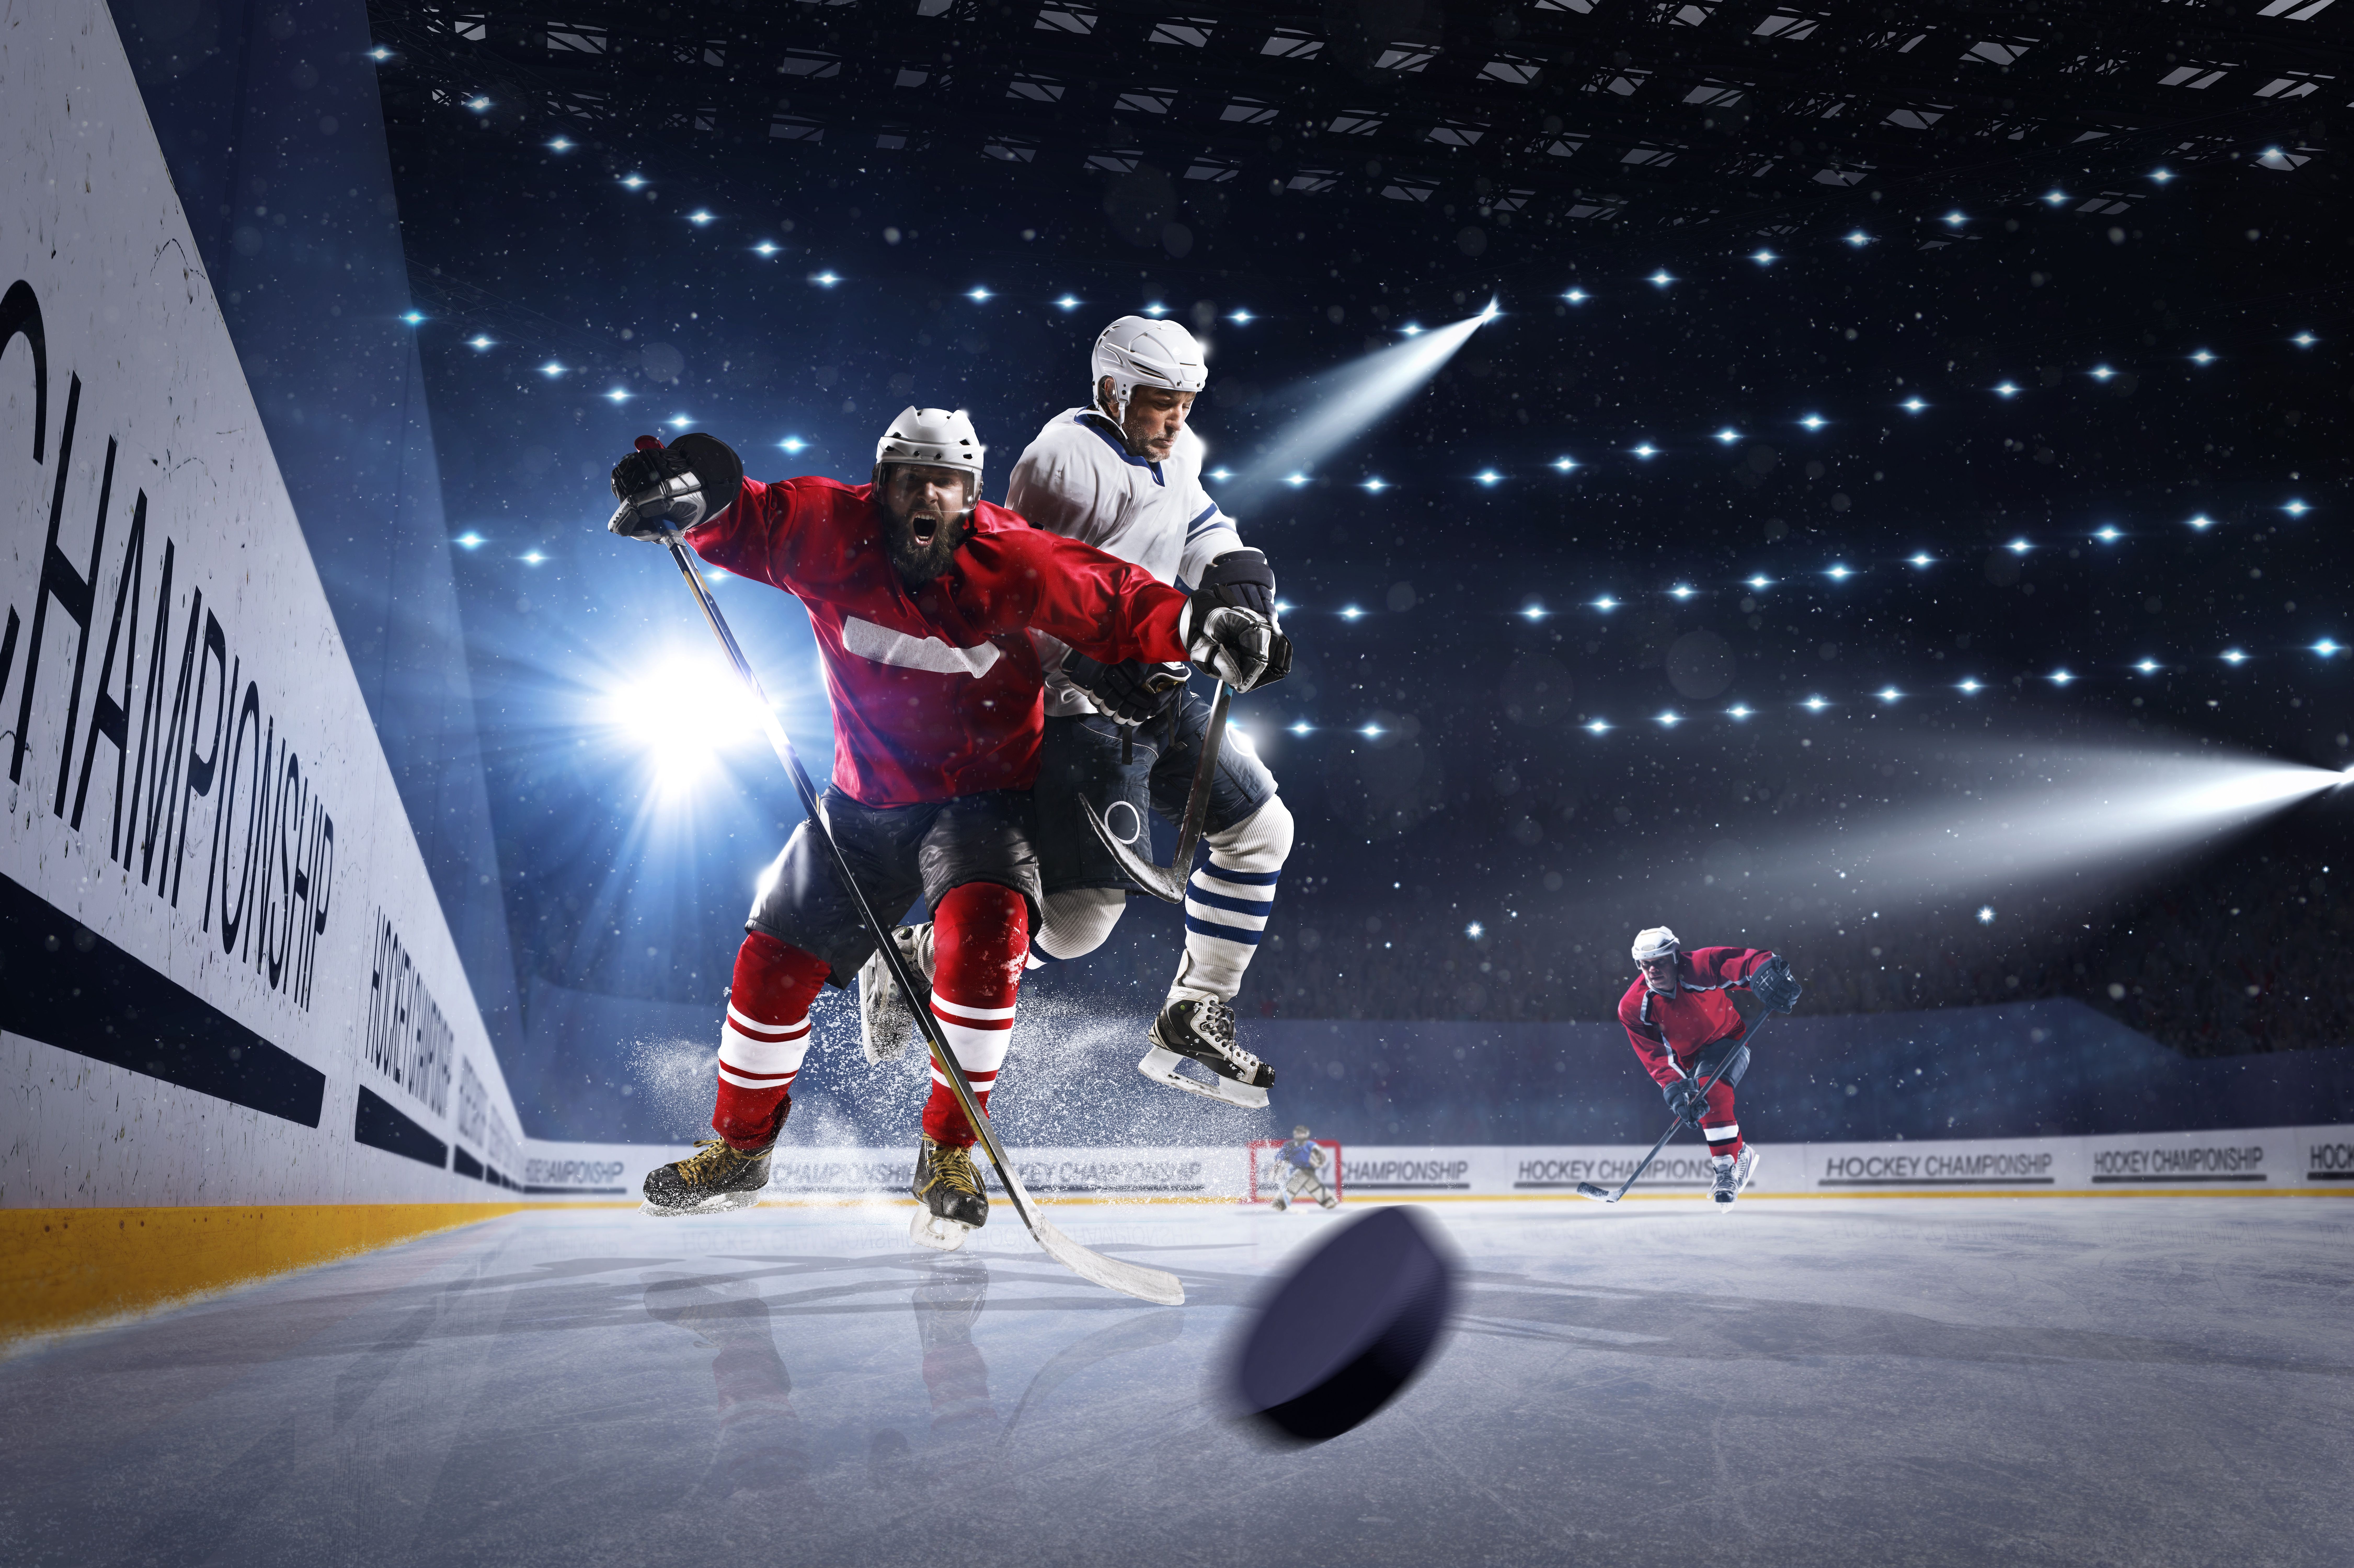  Eishockey Hintergrundbild 9005x6000. Kostenlose Hintergrundbilder Eishockeyspieler Auf Dem Eishockeyfeld, Bilder Für Ihren Desktop Und Fotos